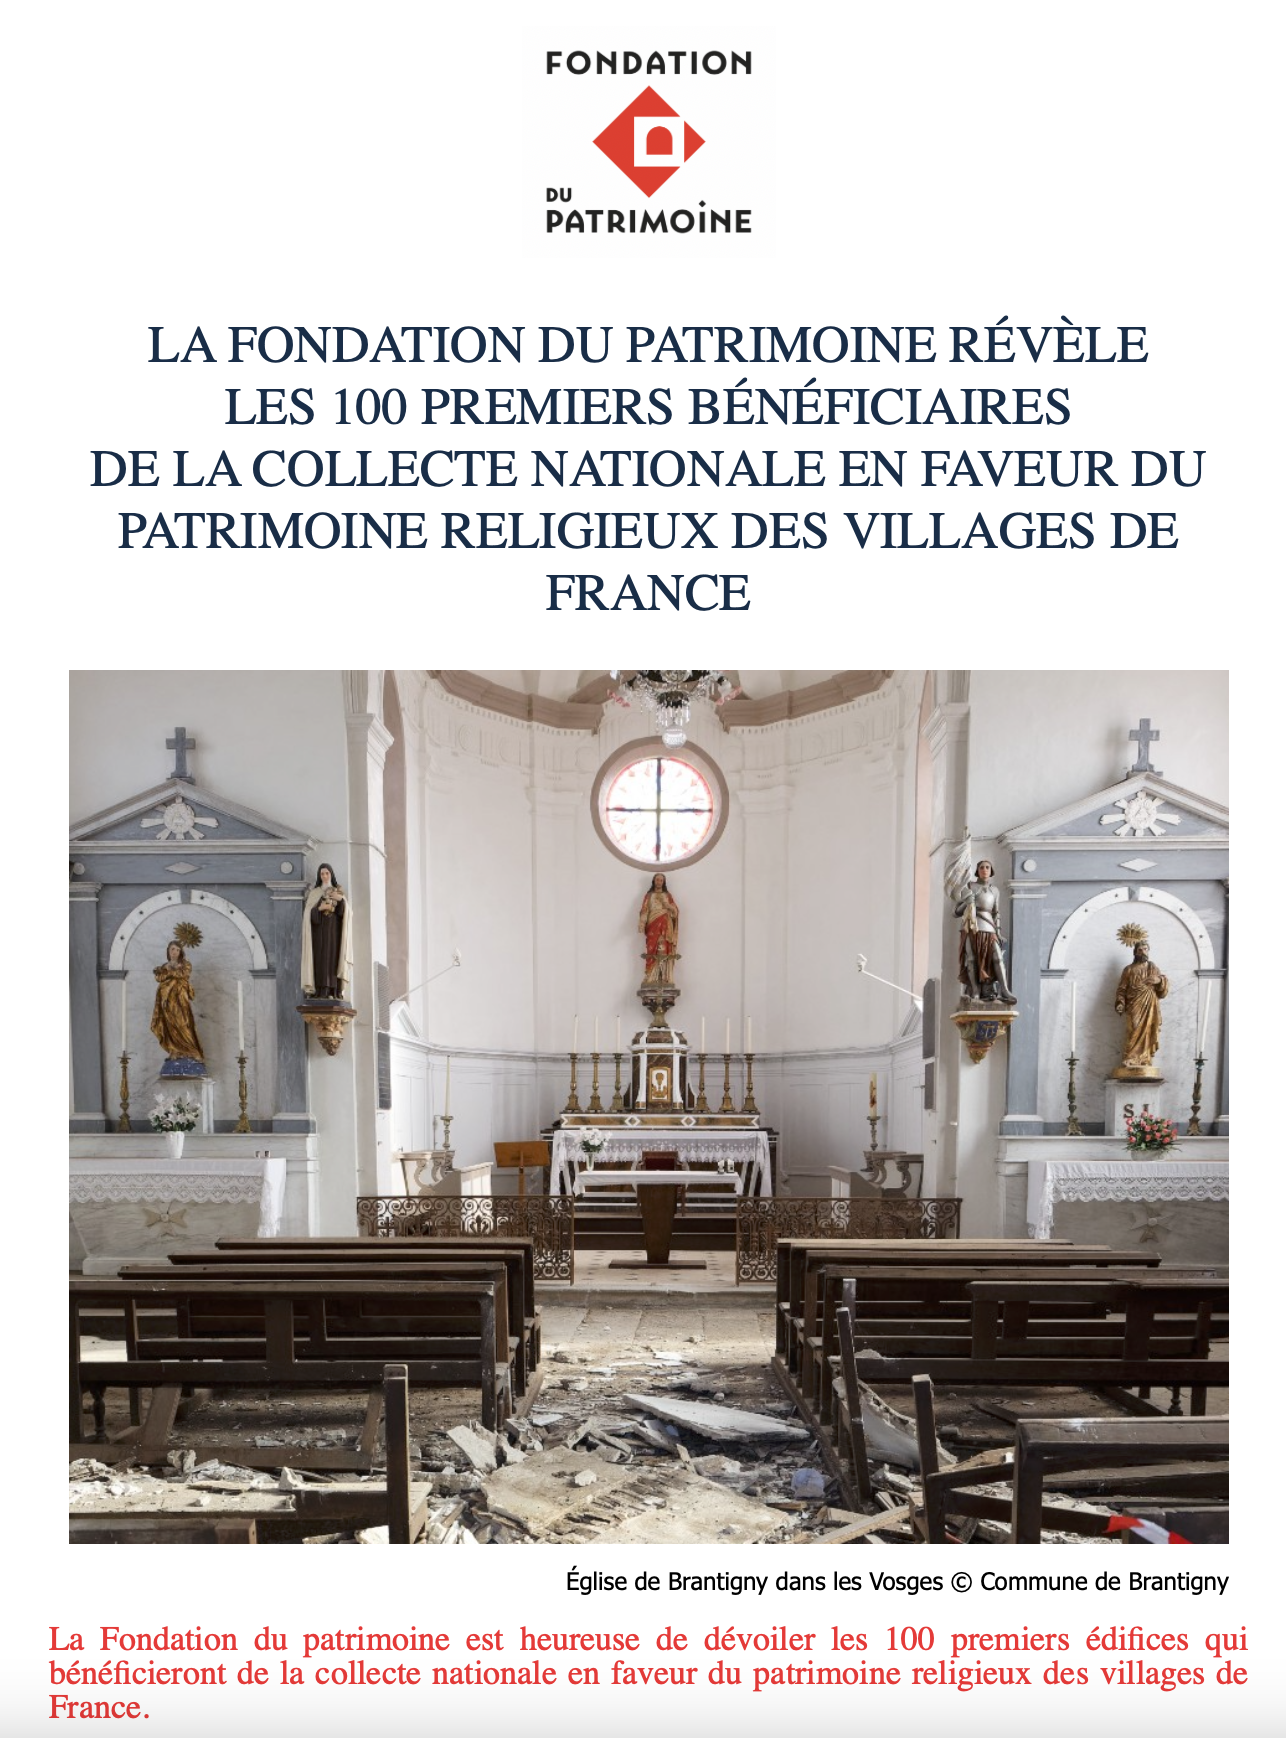 La Fondation du patrimoine est heureuse de dévoiler les 100 premiers édifices qui bénéficieront de la collecte nationale en faveur du patrimoine religieux des villages de France.